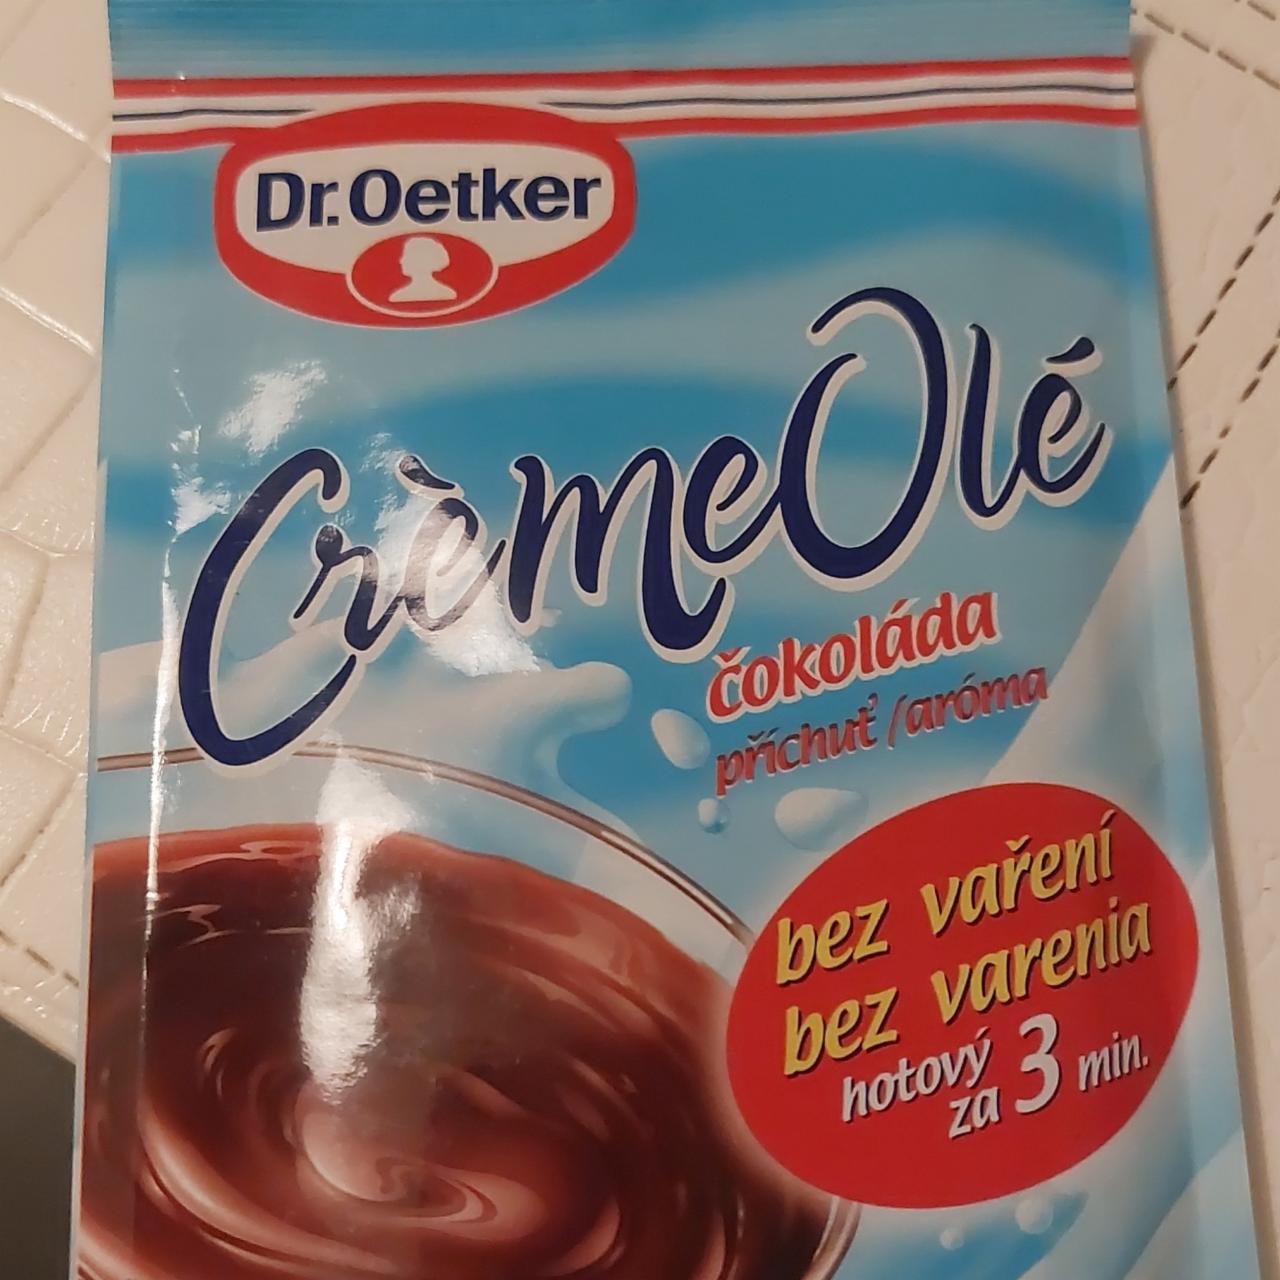 Képek - CrémeOlé Csokoládés Dr.Oetker